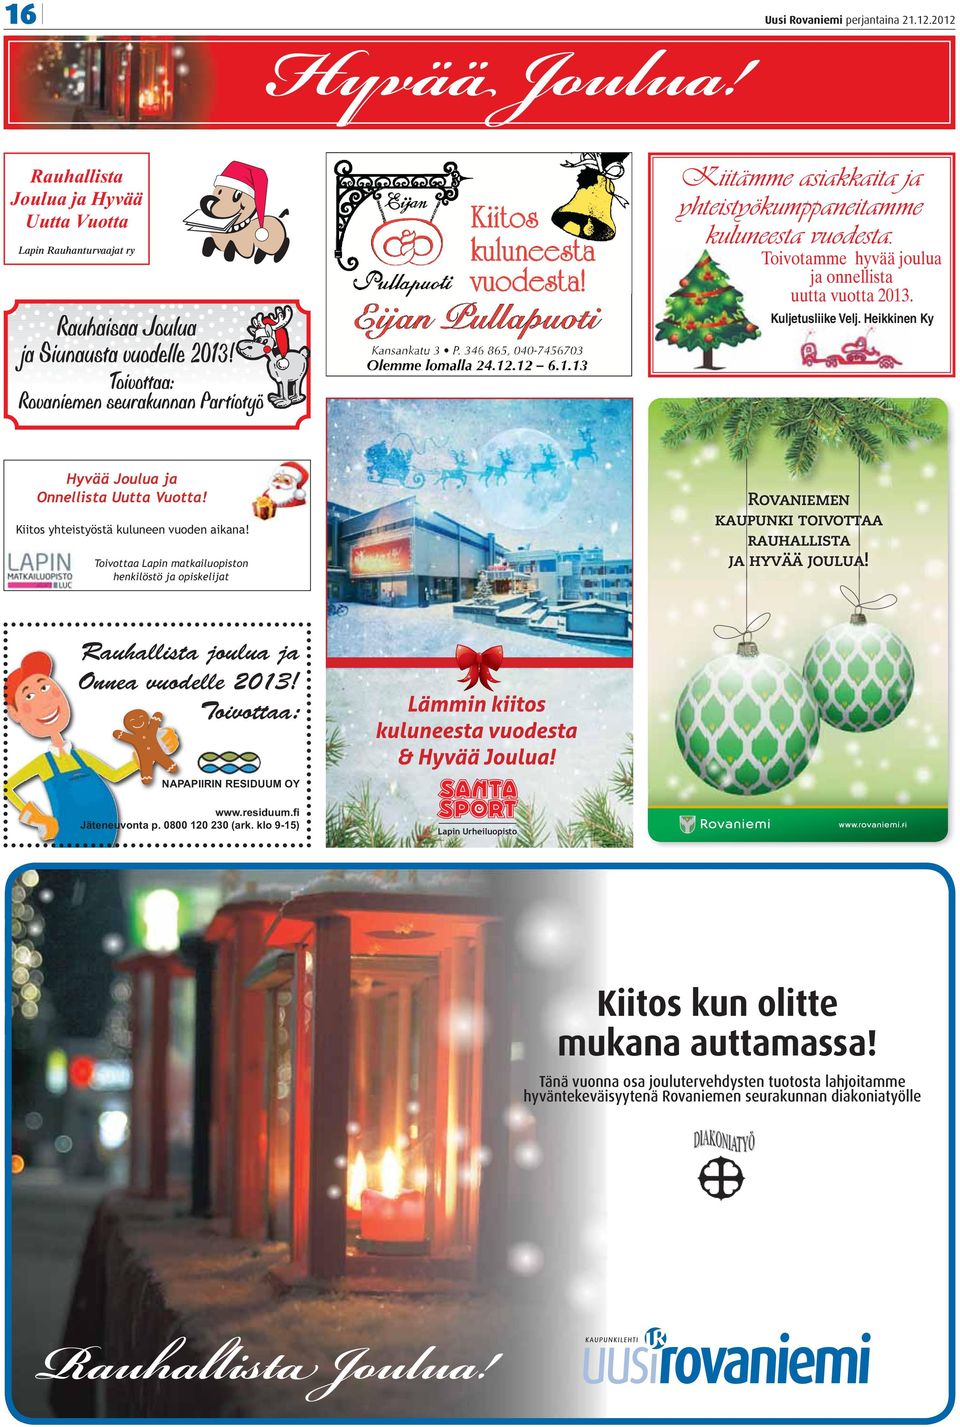 Toivottaa Lapin matkailuopiston henkilöstö ja opiskelijat Rovaniemen kaupunki toivottaa rauhallista ja hyvää joulua! Rauhallista joulua ja Onnea vuodelle 2013!